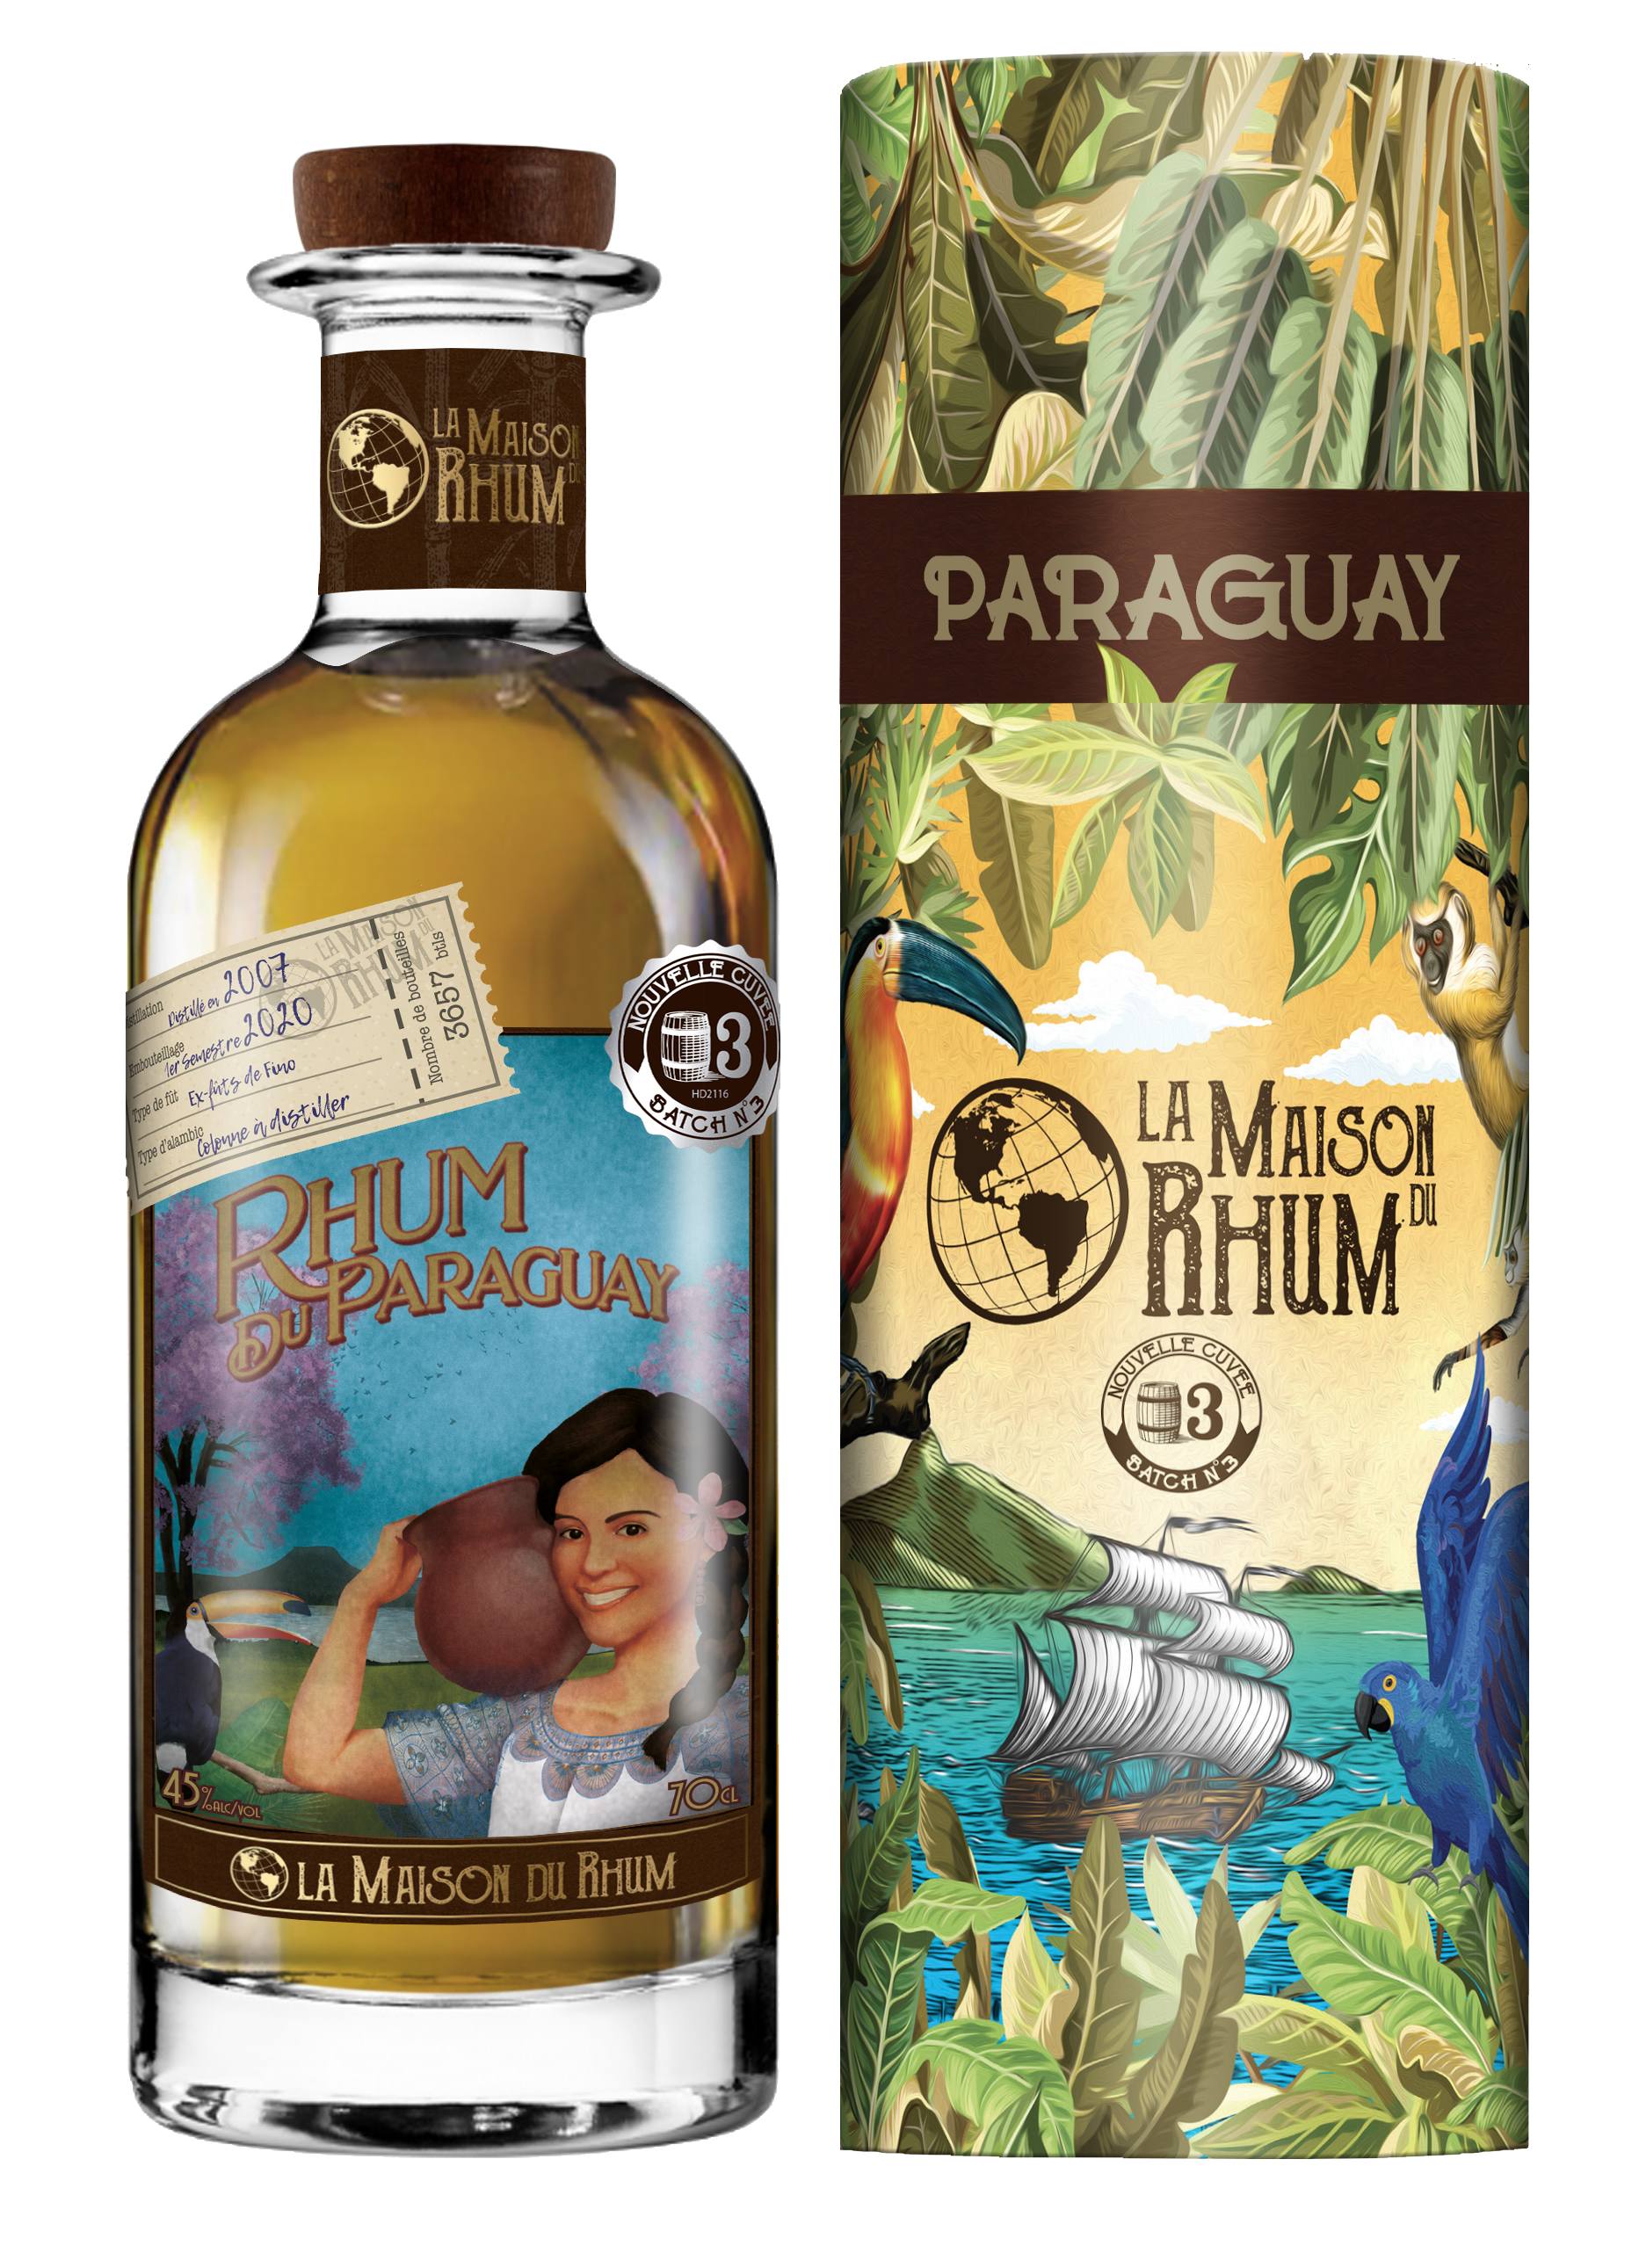 Flasche und Geschenkverpackung La Maison du Rhum Paraguay